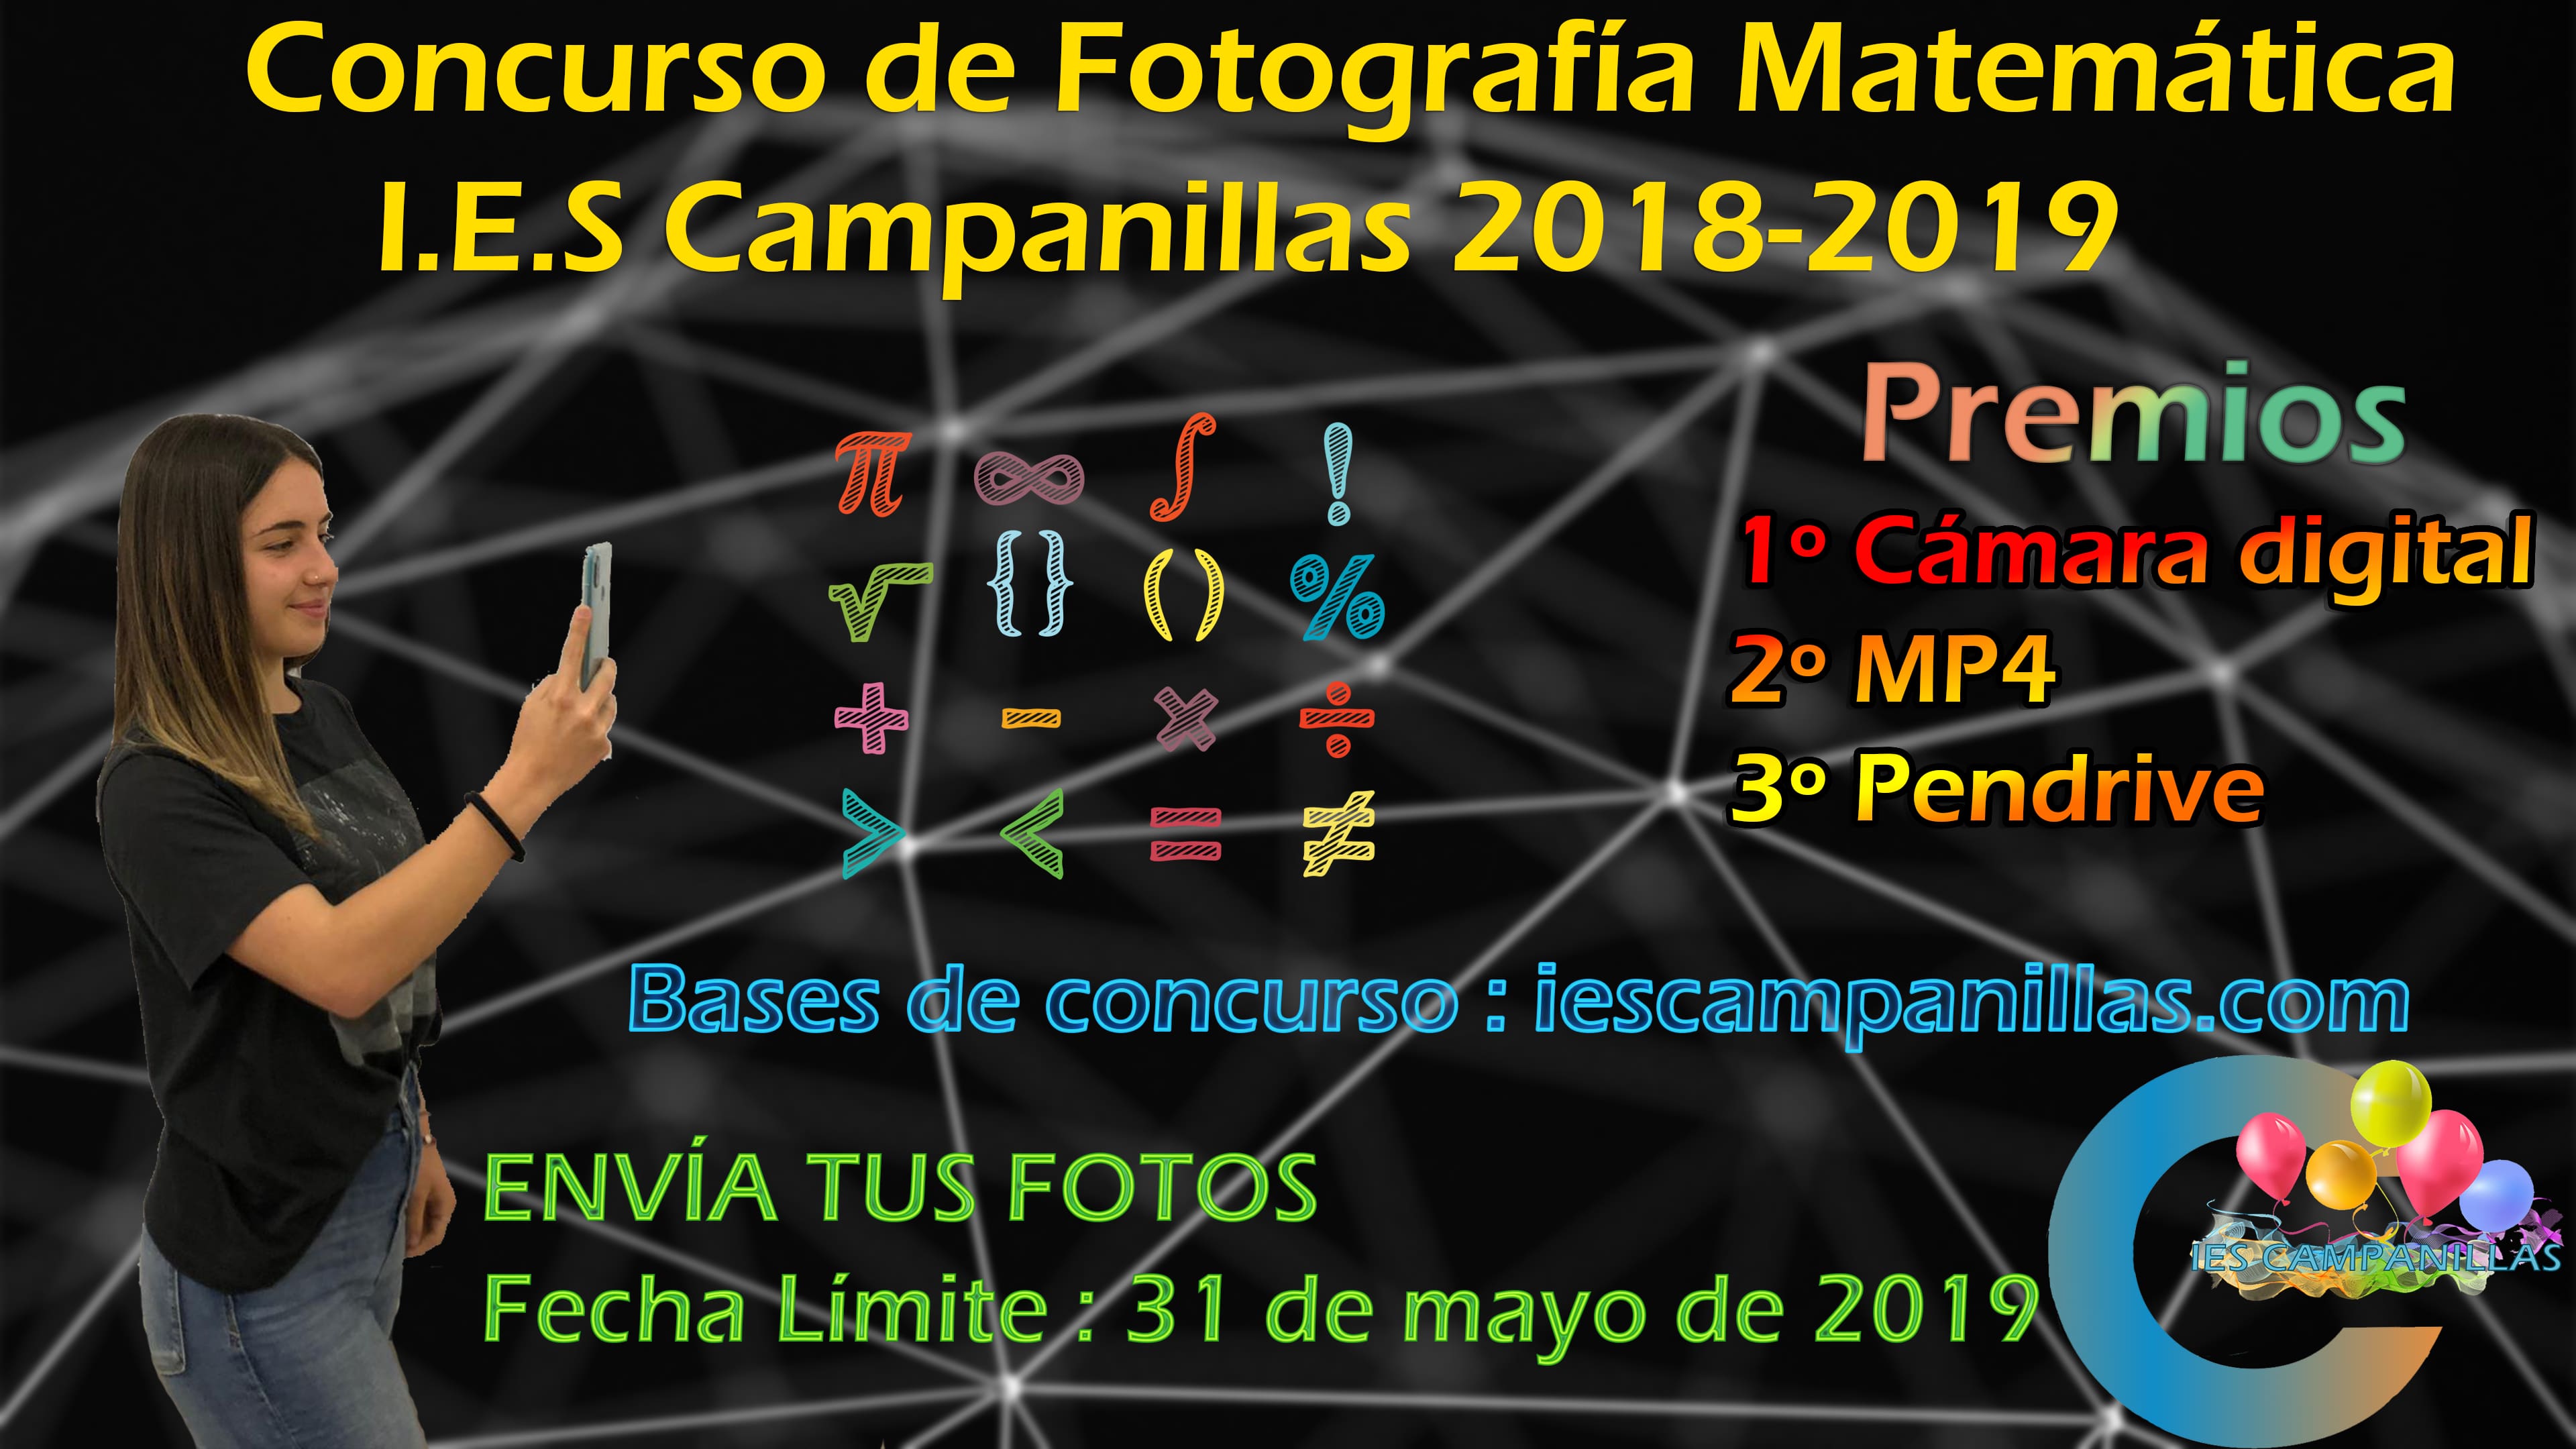 Concurso de Fotografía Matemática 2018-19